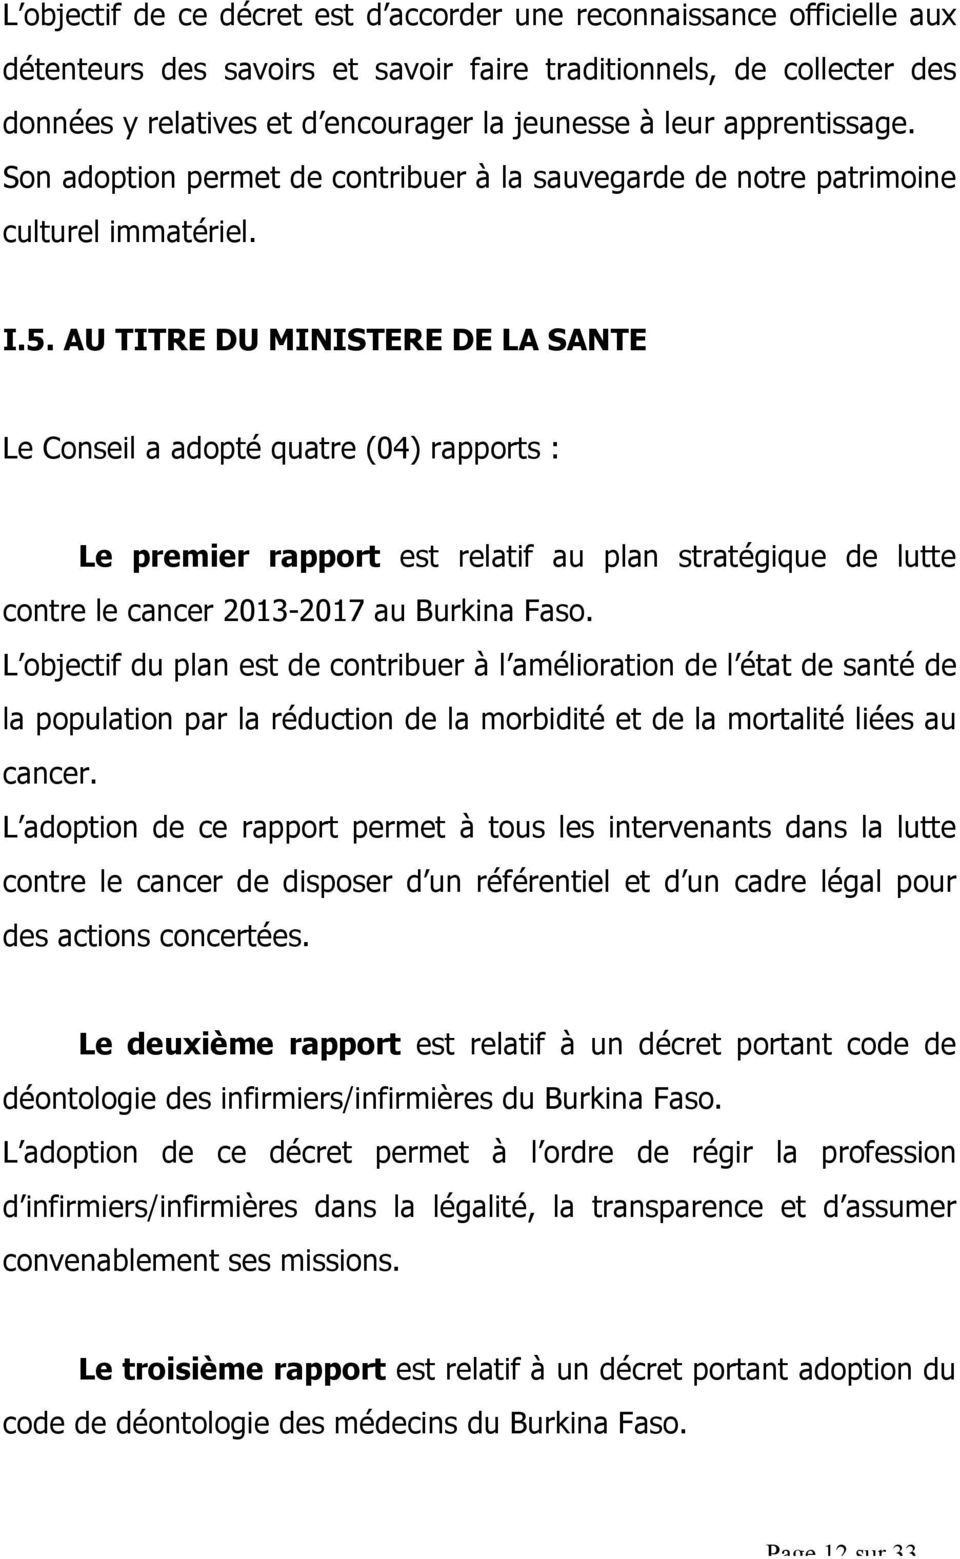 AU TITRE DU MINISTERE DE LA SANTE Le Conseil a adopté quatre (04) rapports : Le premier rapport est relatif au plan stratégique de lutte contre le cancer 2013-2017 au Burkina Faso.